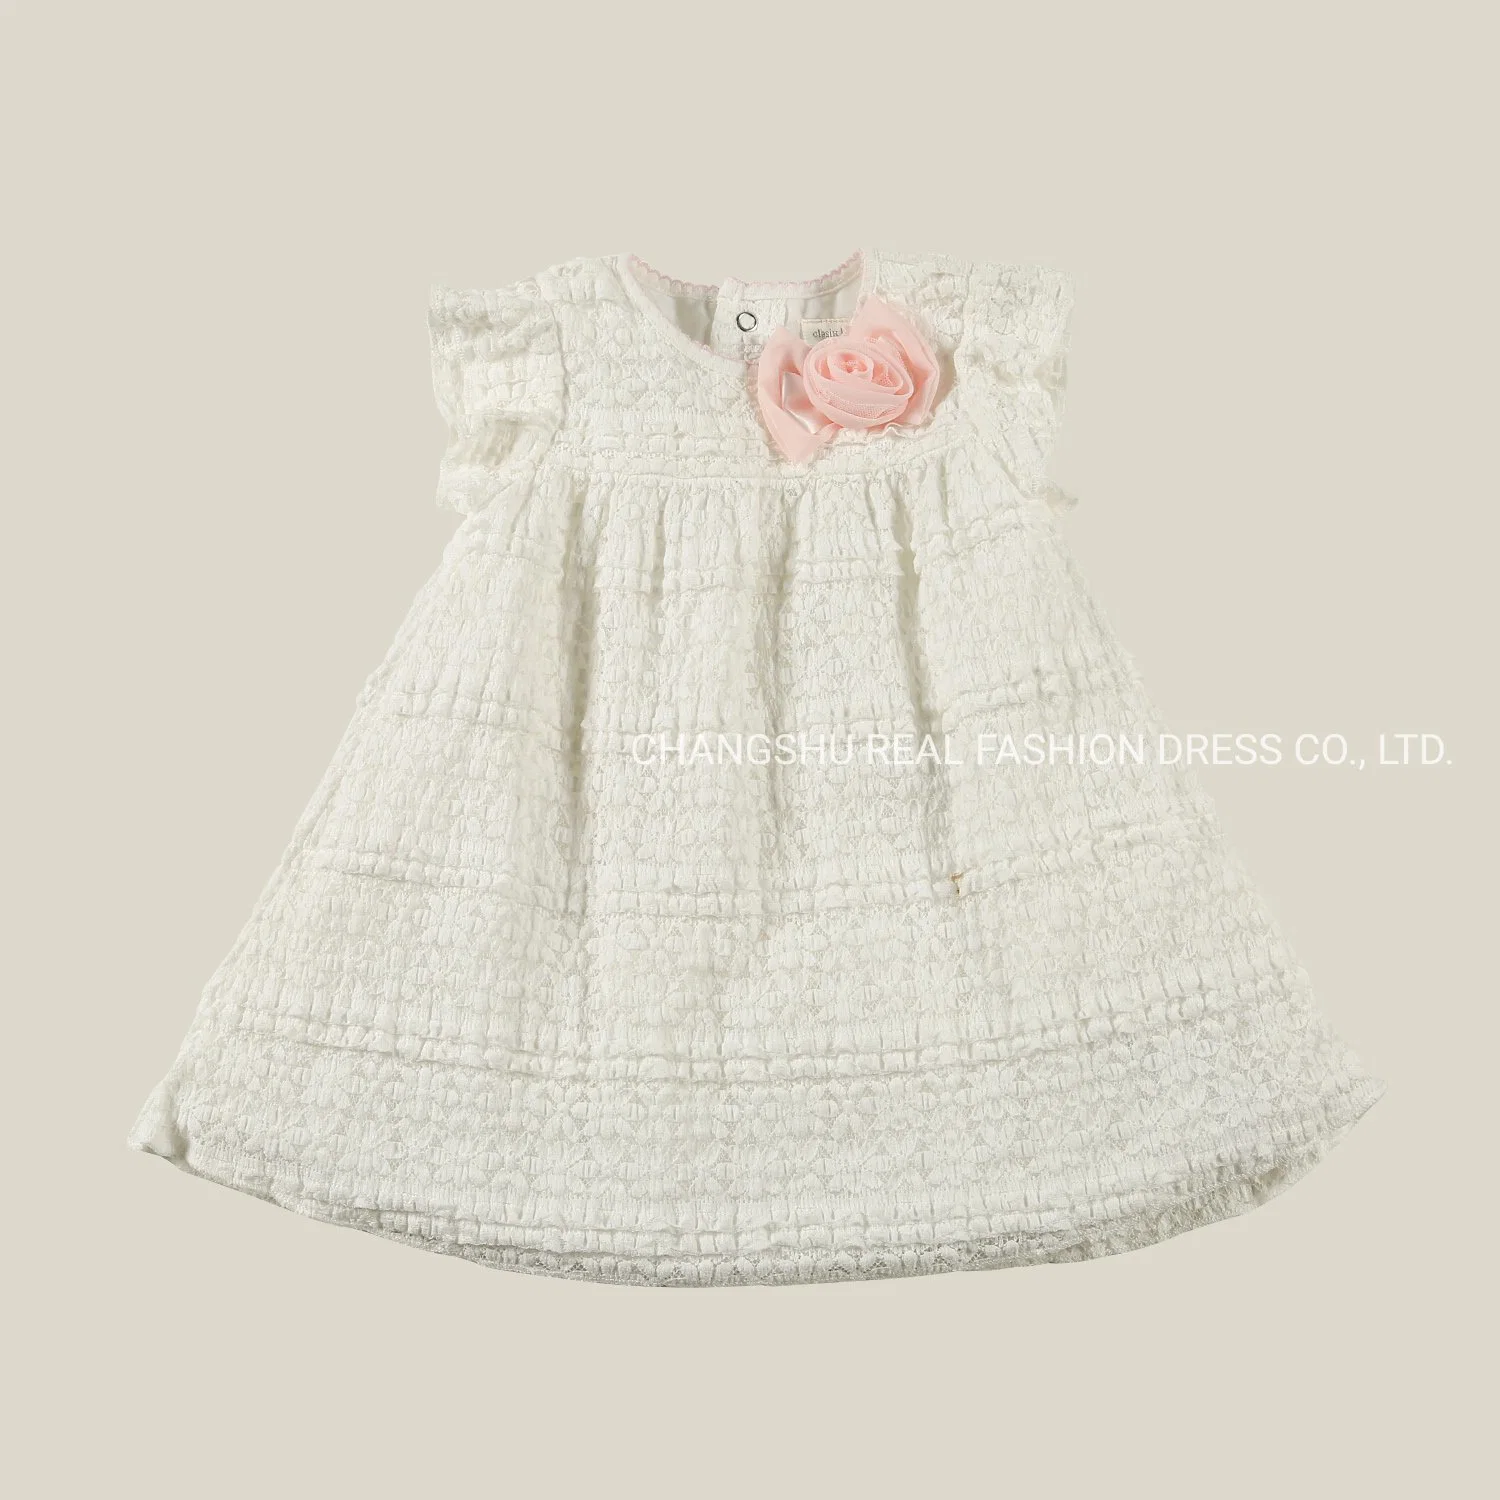 Ropa de bebé recién nacido niño niña vestido de encaje blanco satinado desgaste con flor y forro de tejido